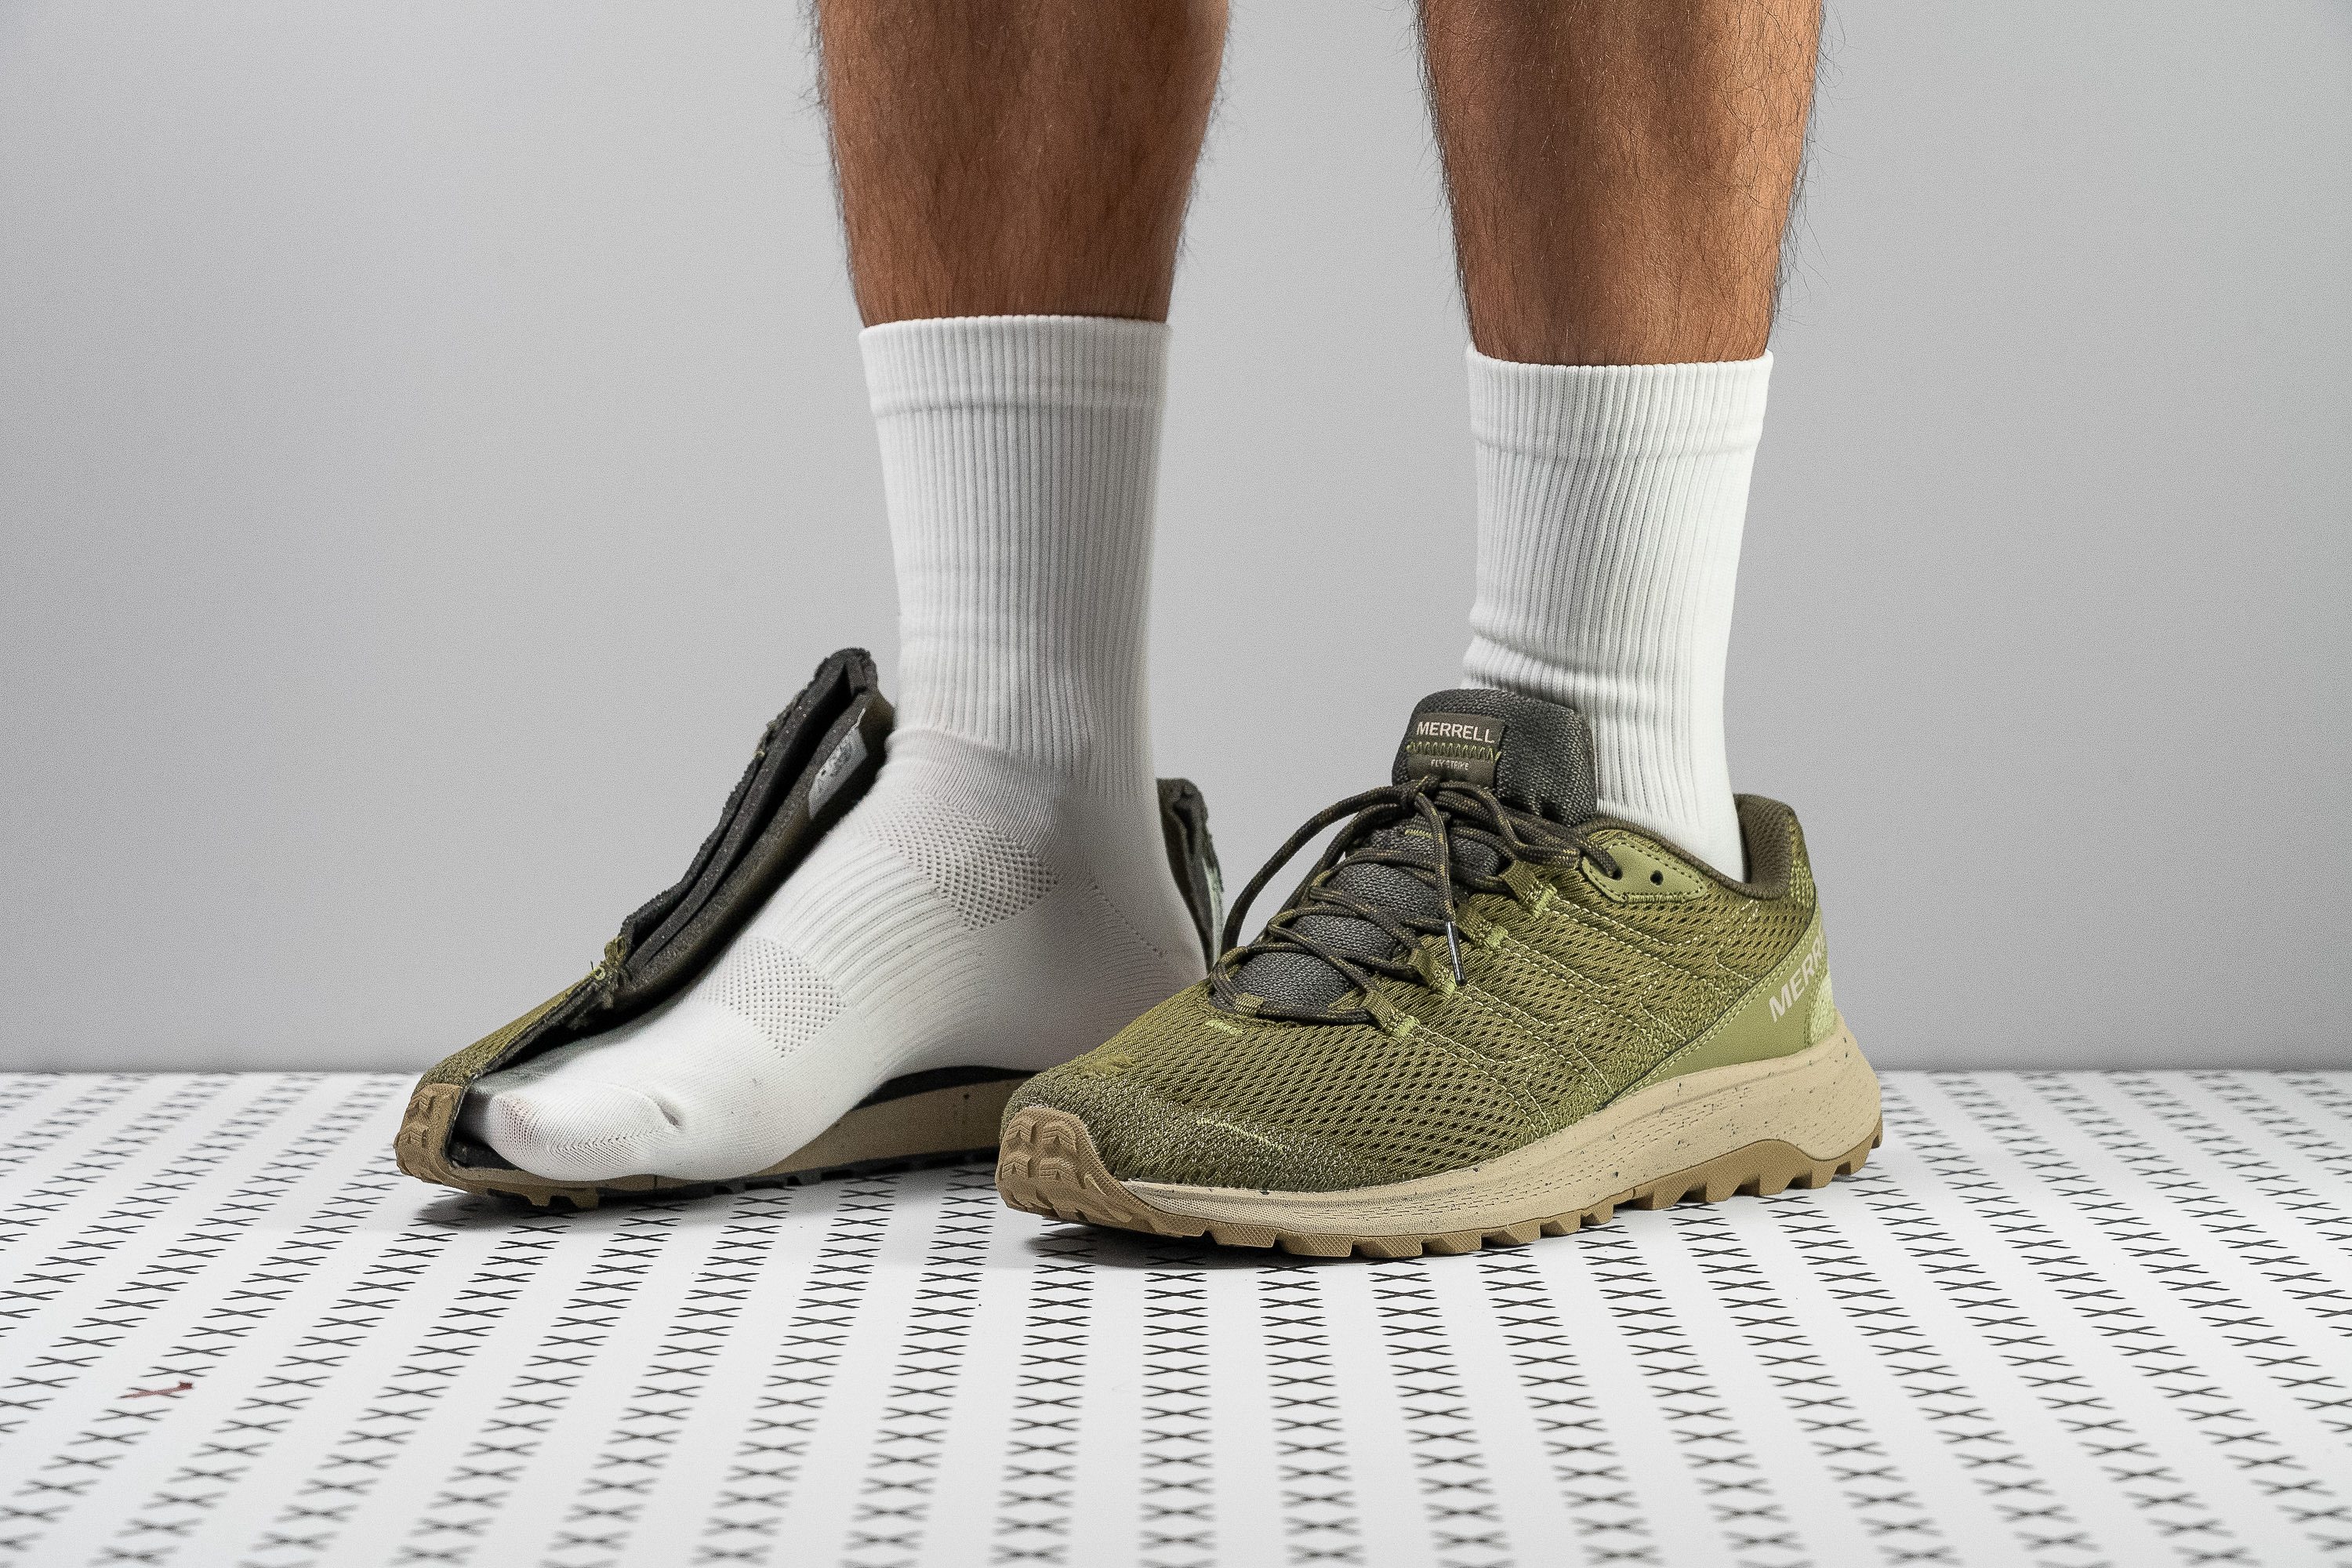 zapatillas de running Adidas hombre ritmo bajo talla 36.5 baratas menos de 60